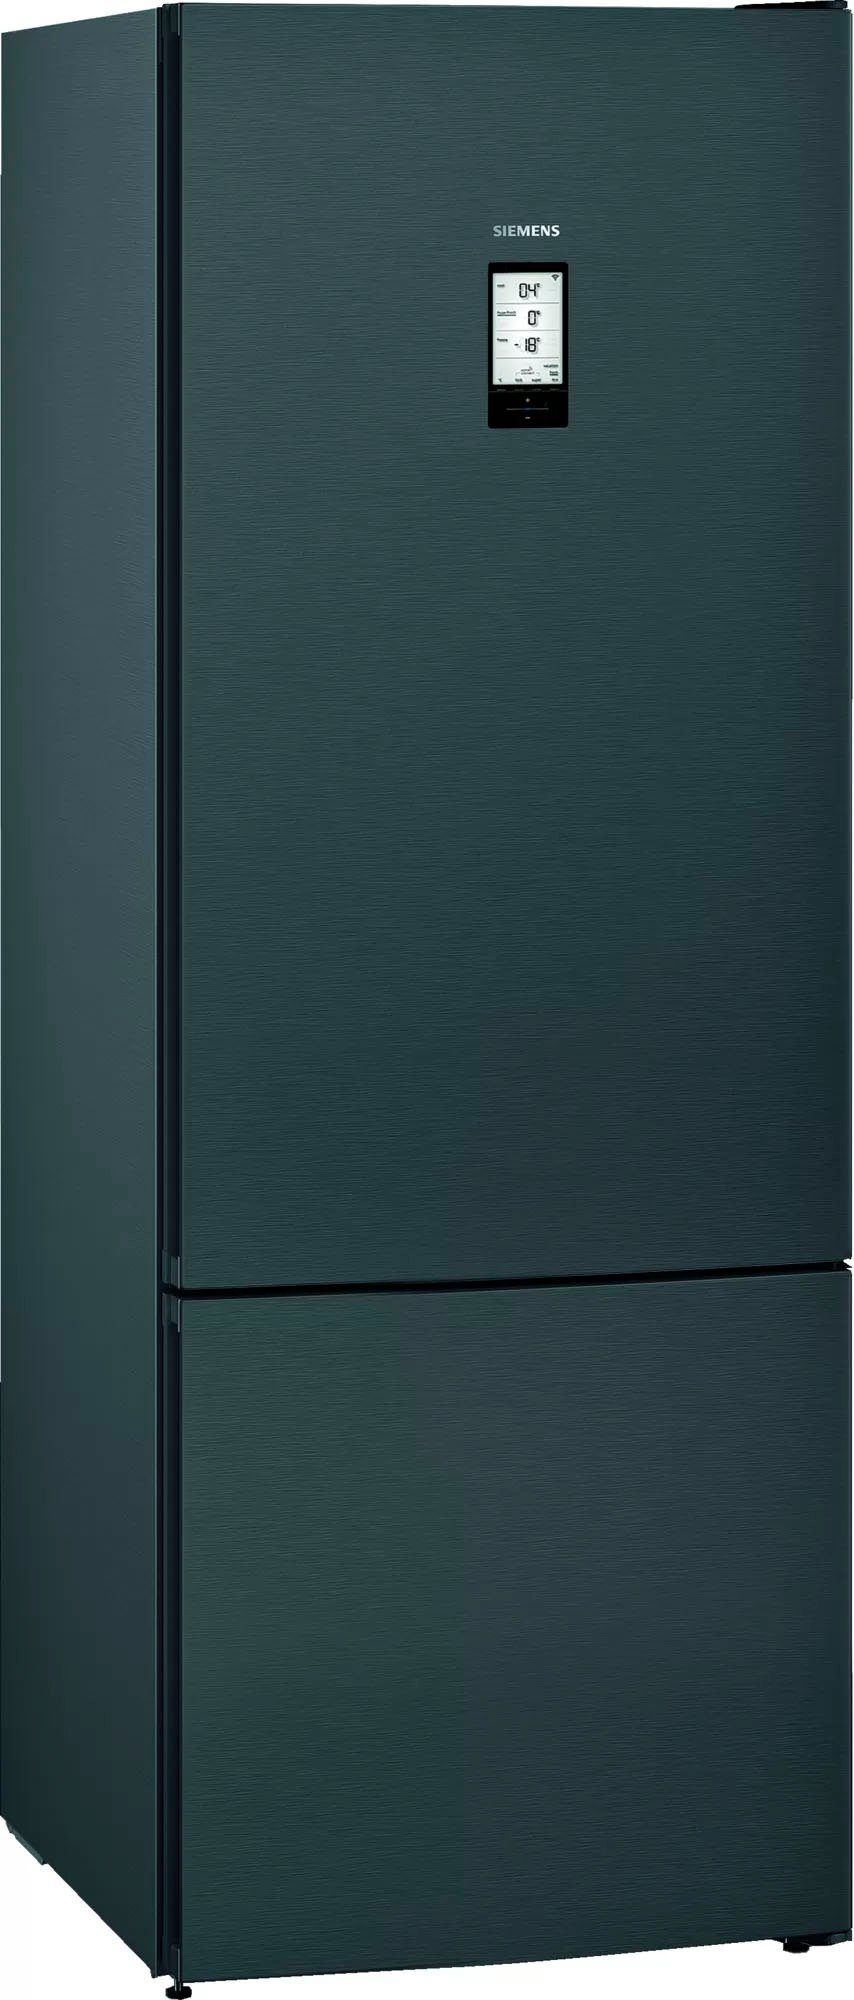 Siemens Kühlschränke online kaufen | OTTO